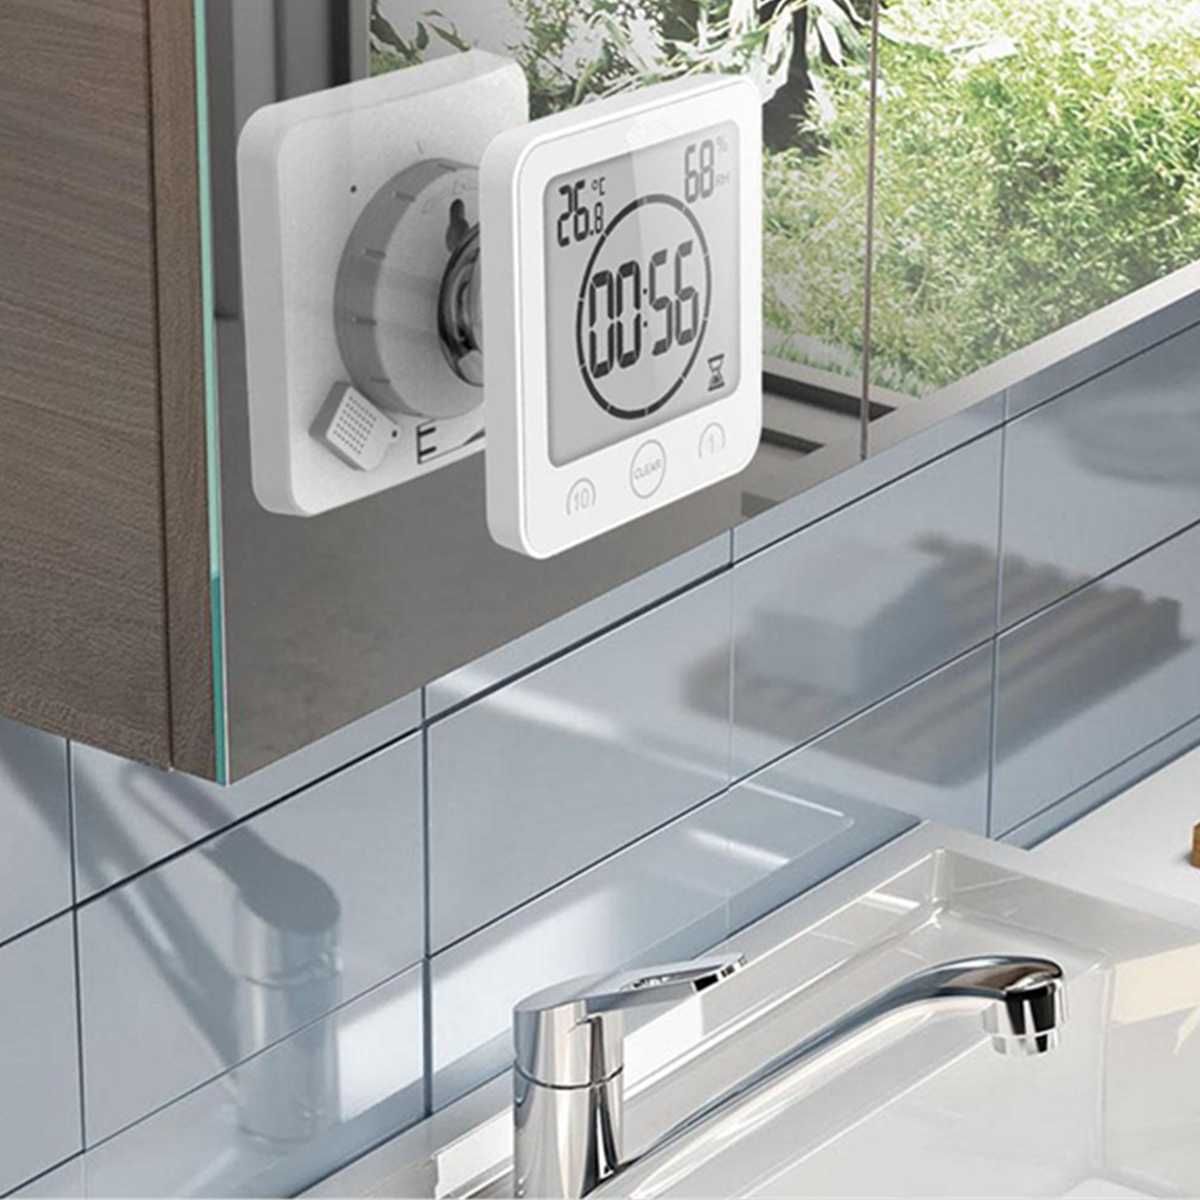 LCD Ekran Su Geçirmez Dijital Banyo Duvar Saati Sıcaklık Nem Geri Sayım Süresi Fonksiyonu Yıkama Duş Asılı Saatler Zamanlayıcı 210421